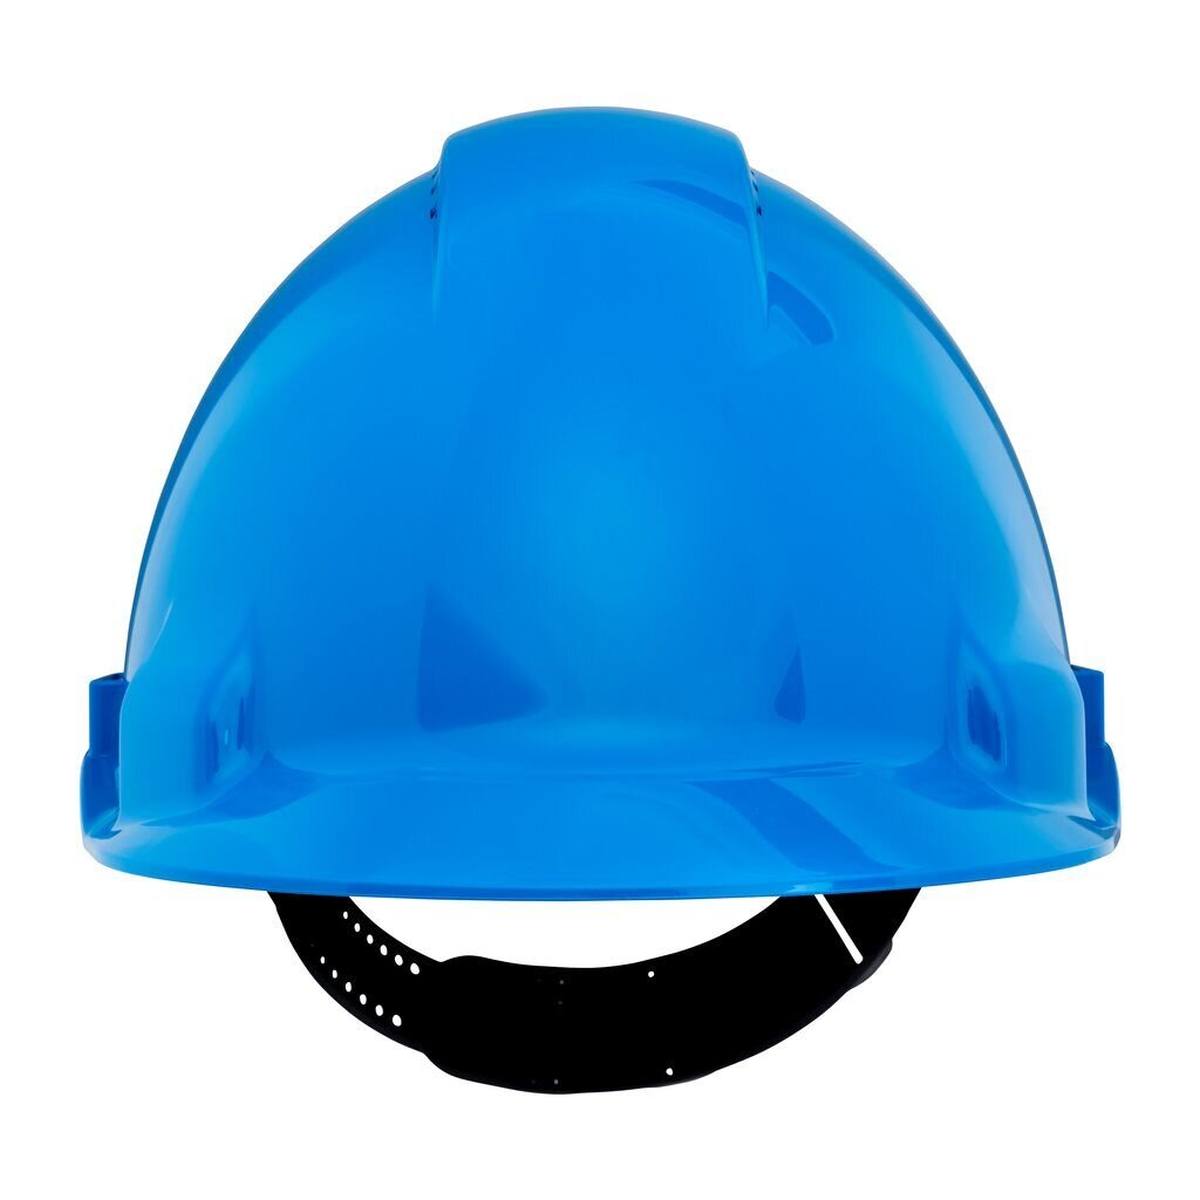 3M G3000 casque de protection G30CUB en bleu, ventilé, avec uvicator, pinlock et bande de soudure en plastique